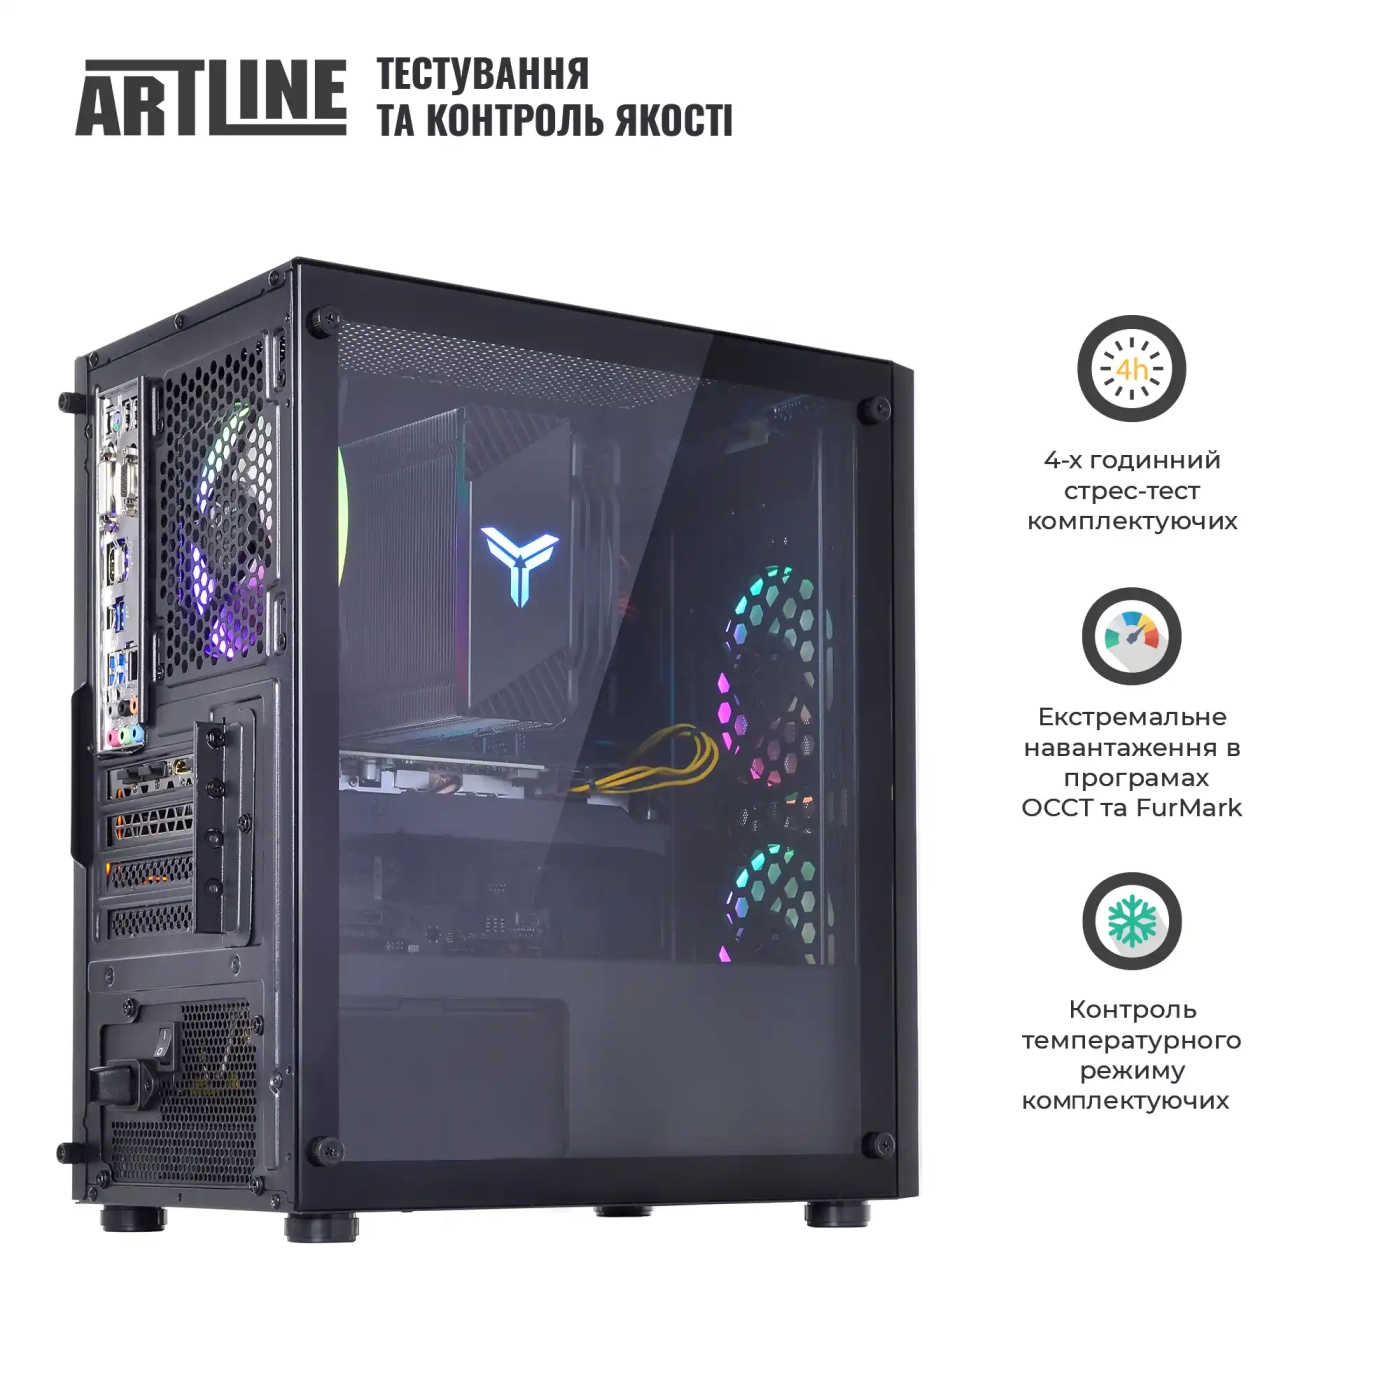 Купить Компьютер ARTLINE Gaming X39v72 - фото 7